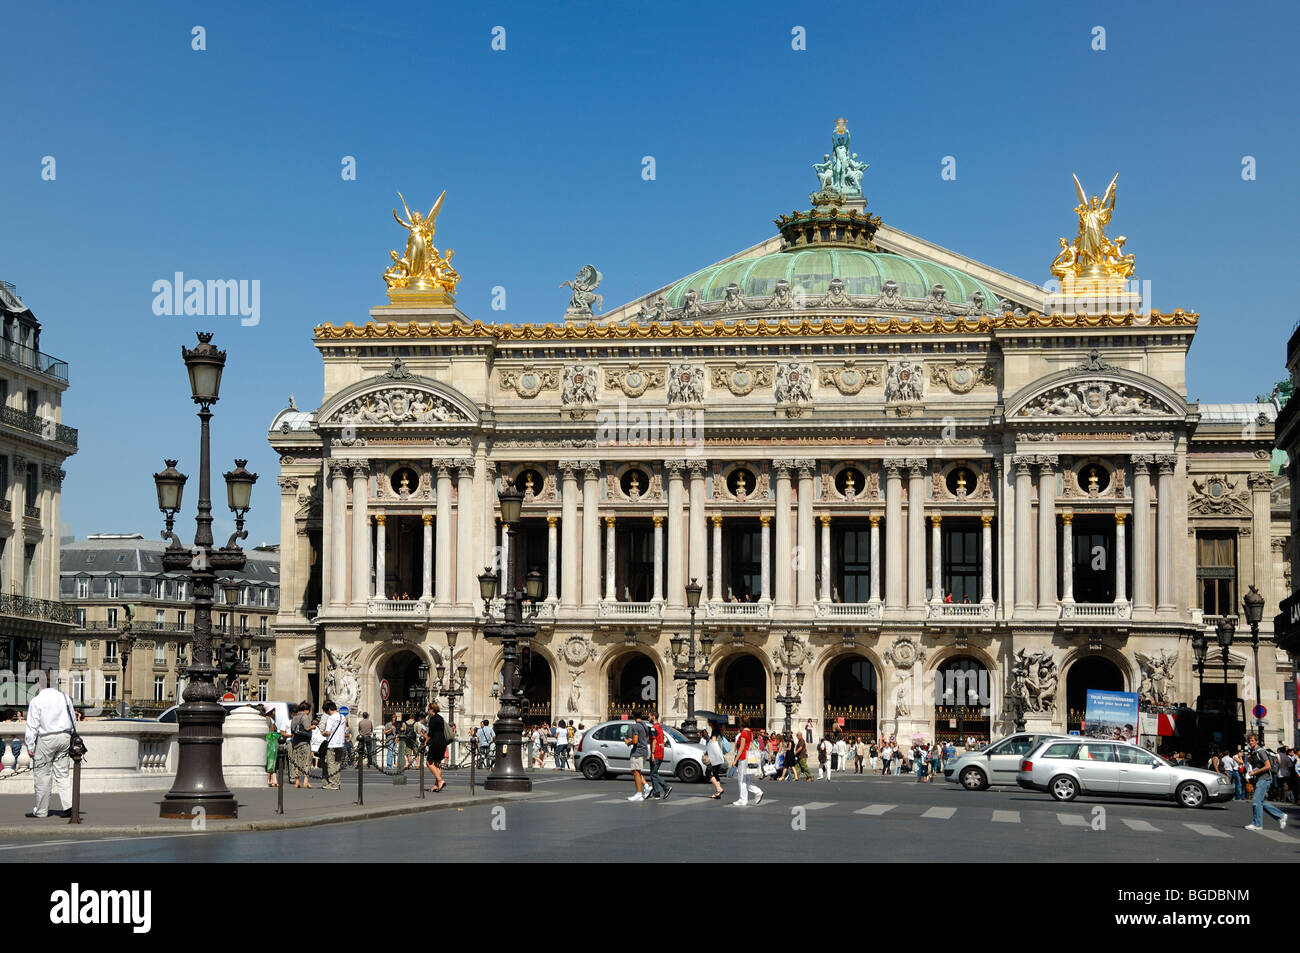 Les touristes et de circulation à l'extérieur de l'Opéra de Paris, Palais Garnier, Opéra de Paris ou l'Opéra Garnier, Paris, France Banque D'Images